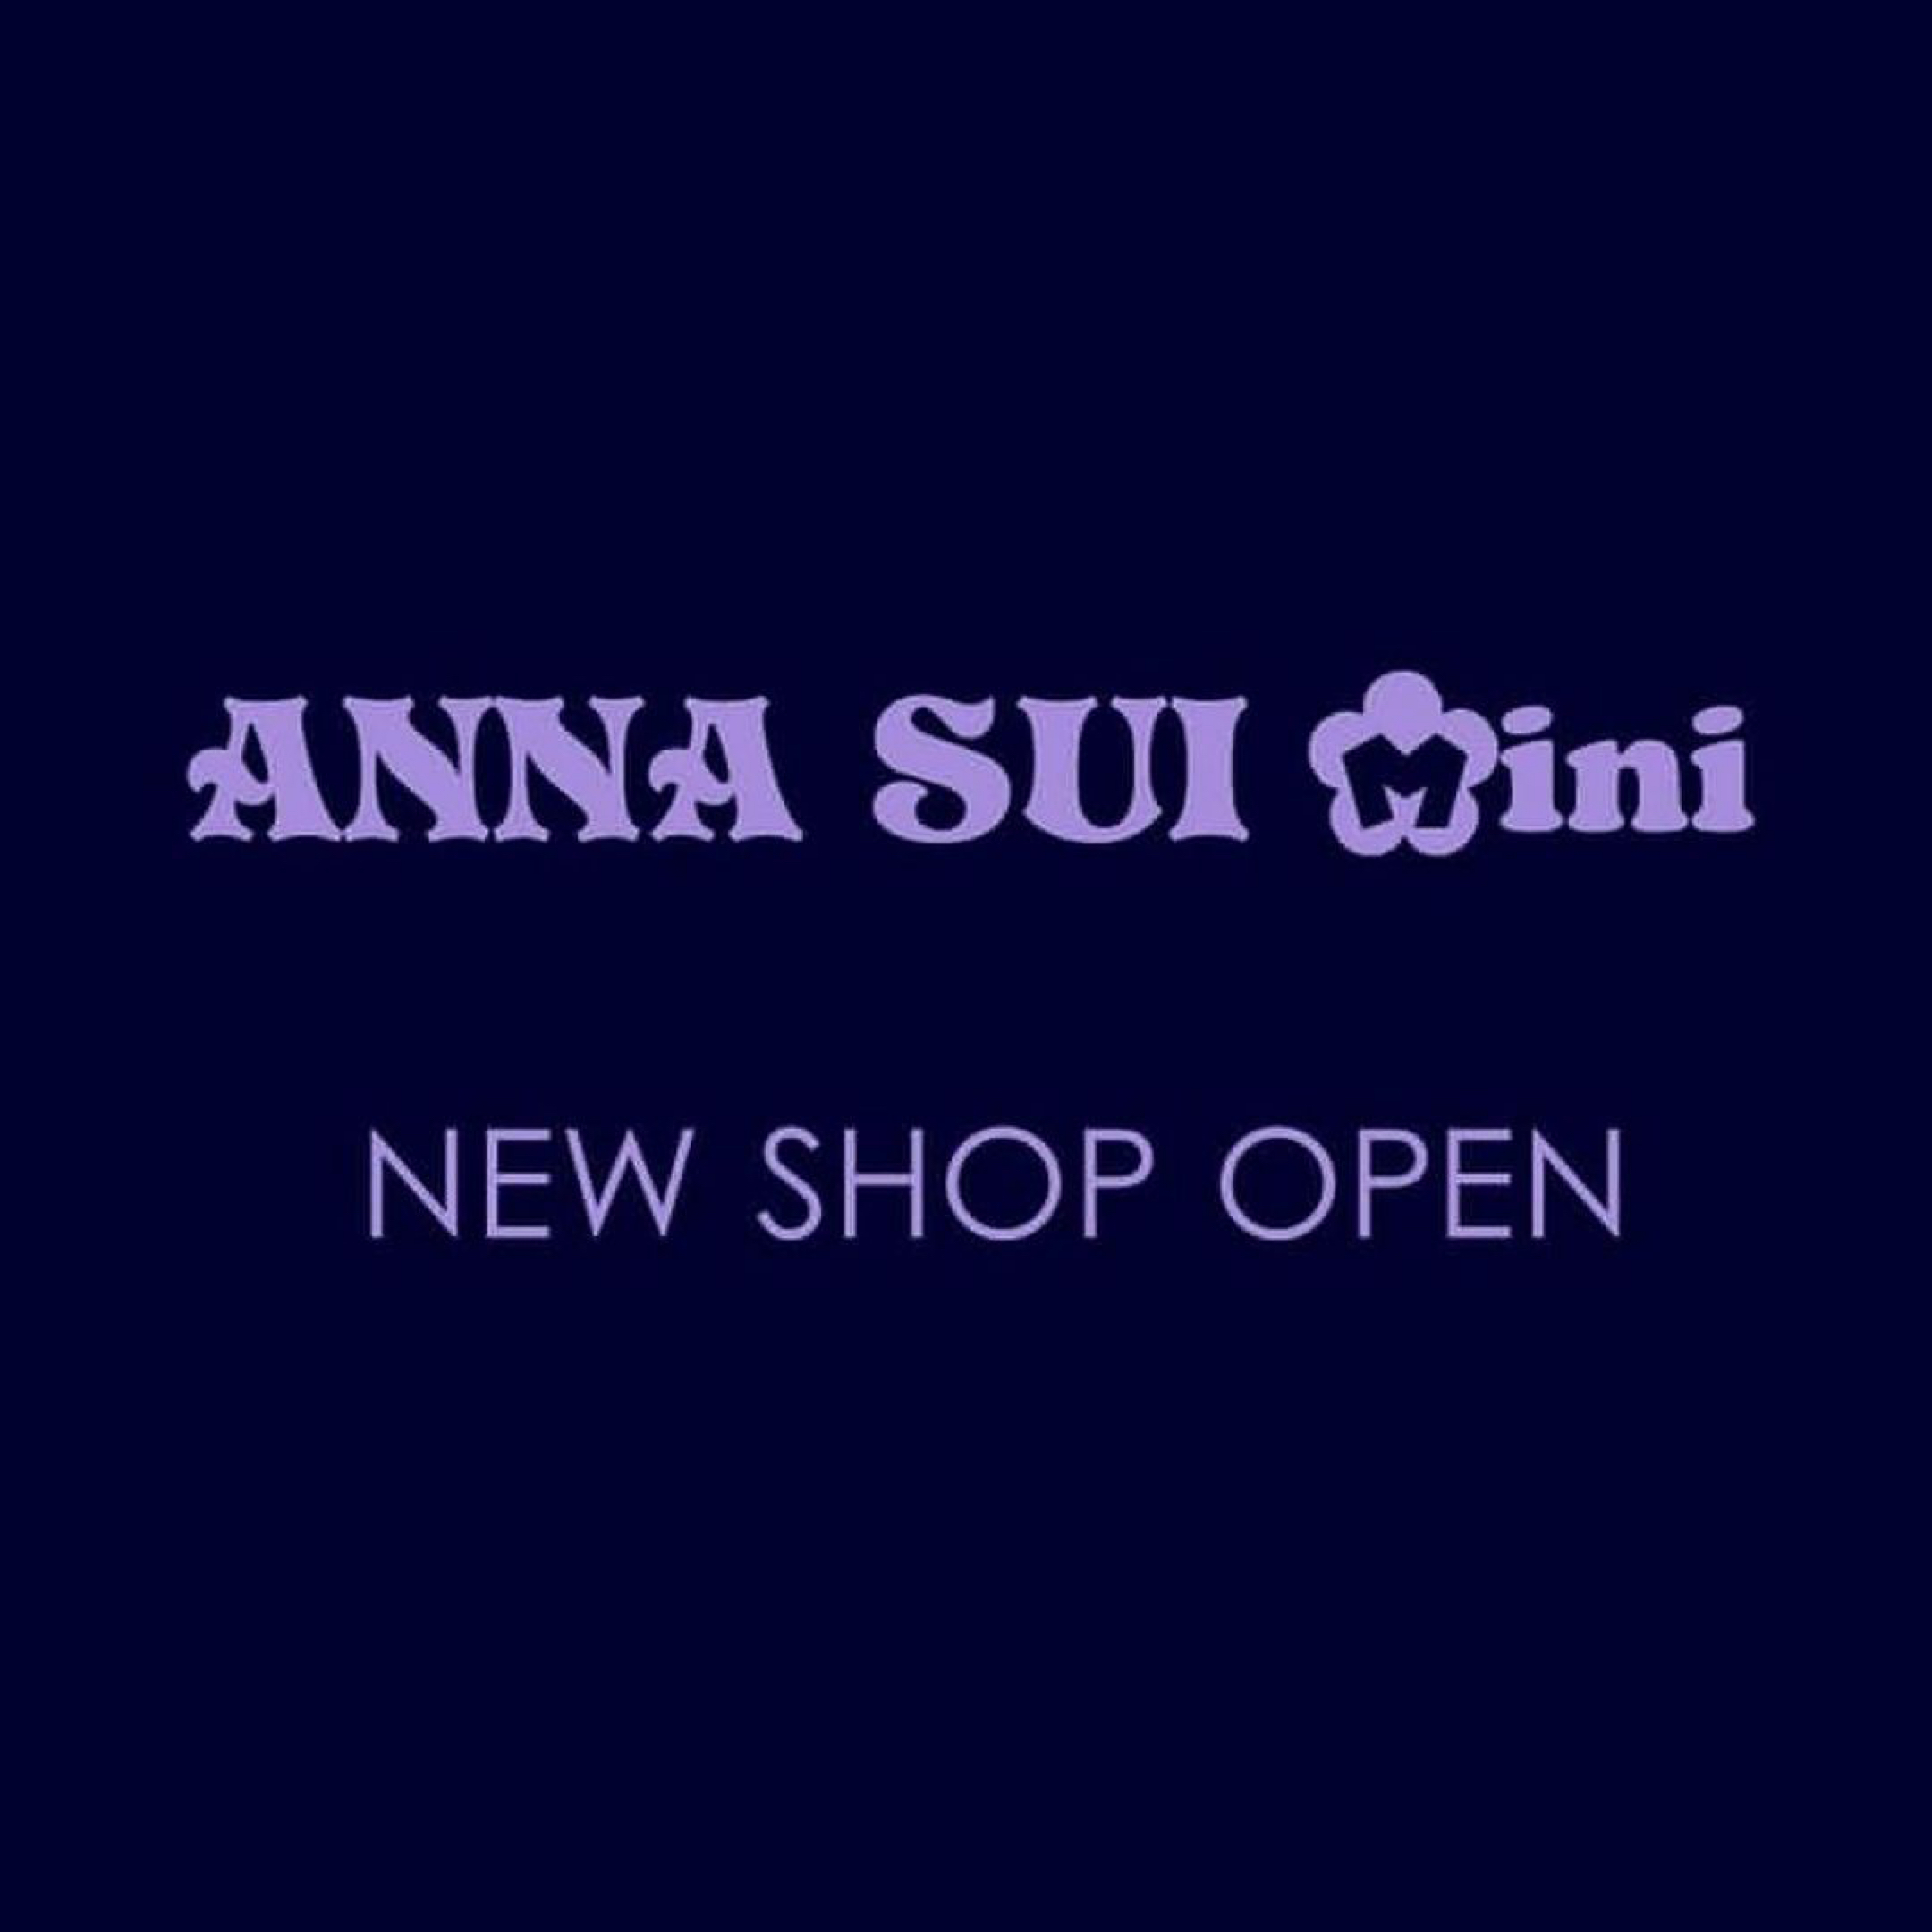 【NEW SHOP OPEN】4月25日(木) 東急百貨店吉祥寺店にアナ スイ・ミニの新店舗がオープン♪